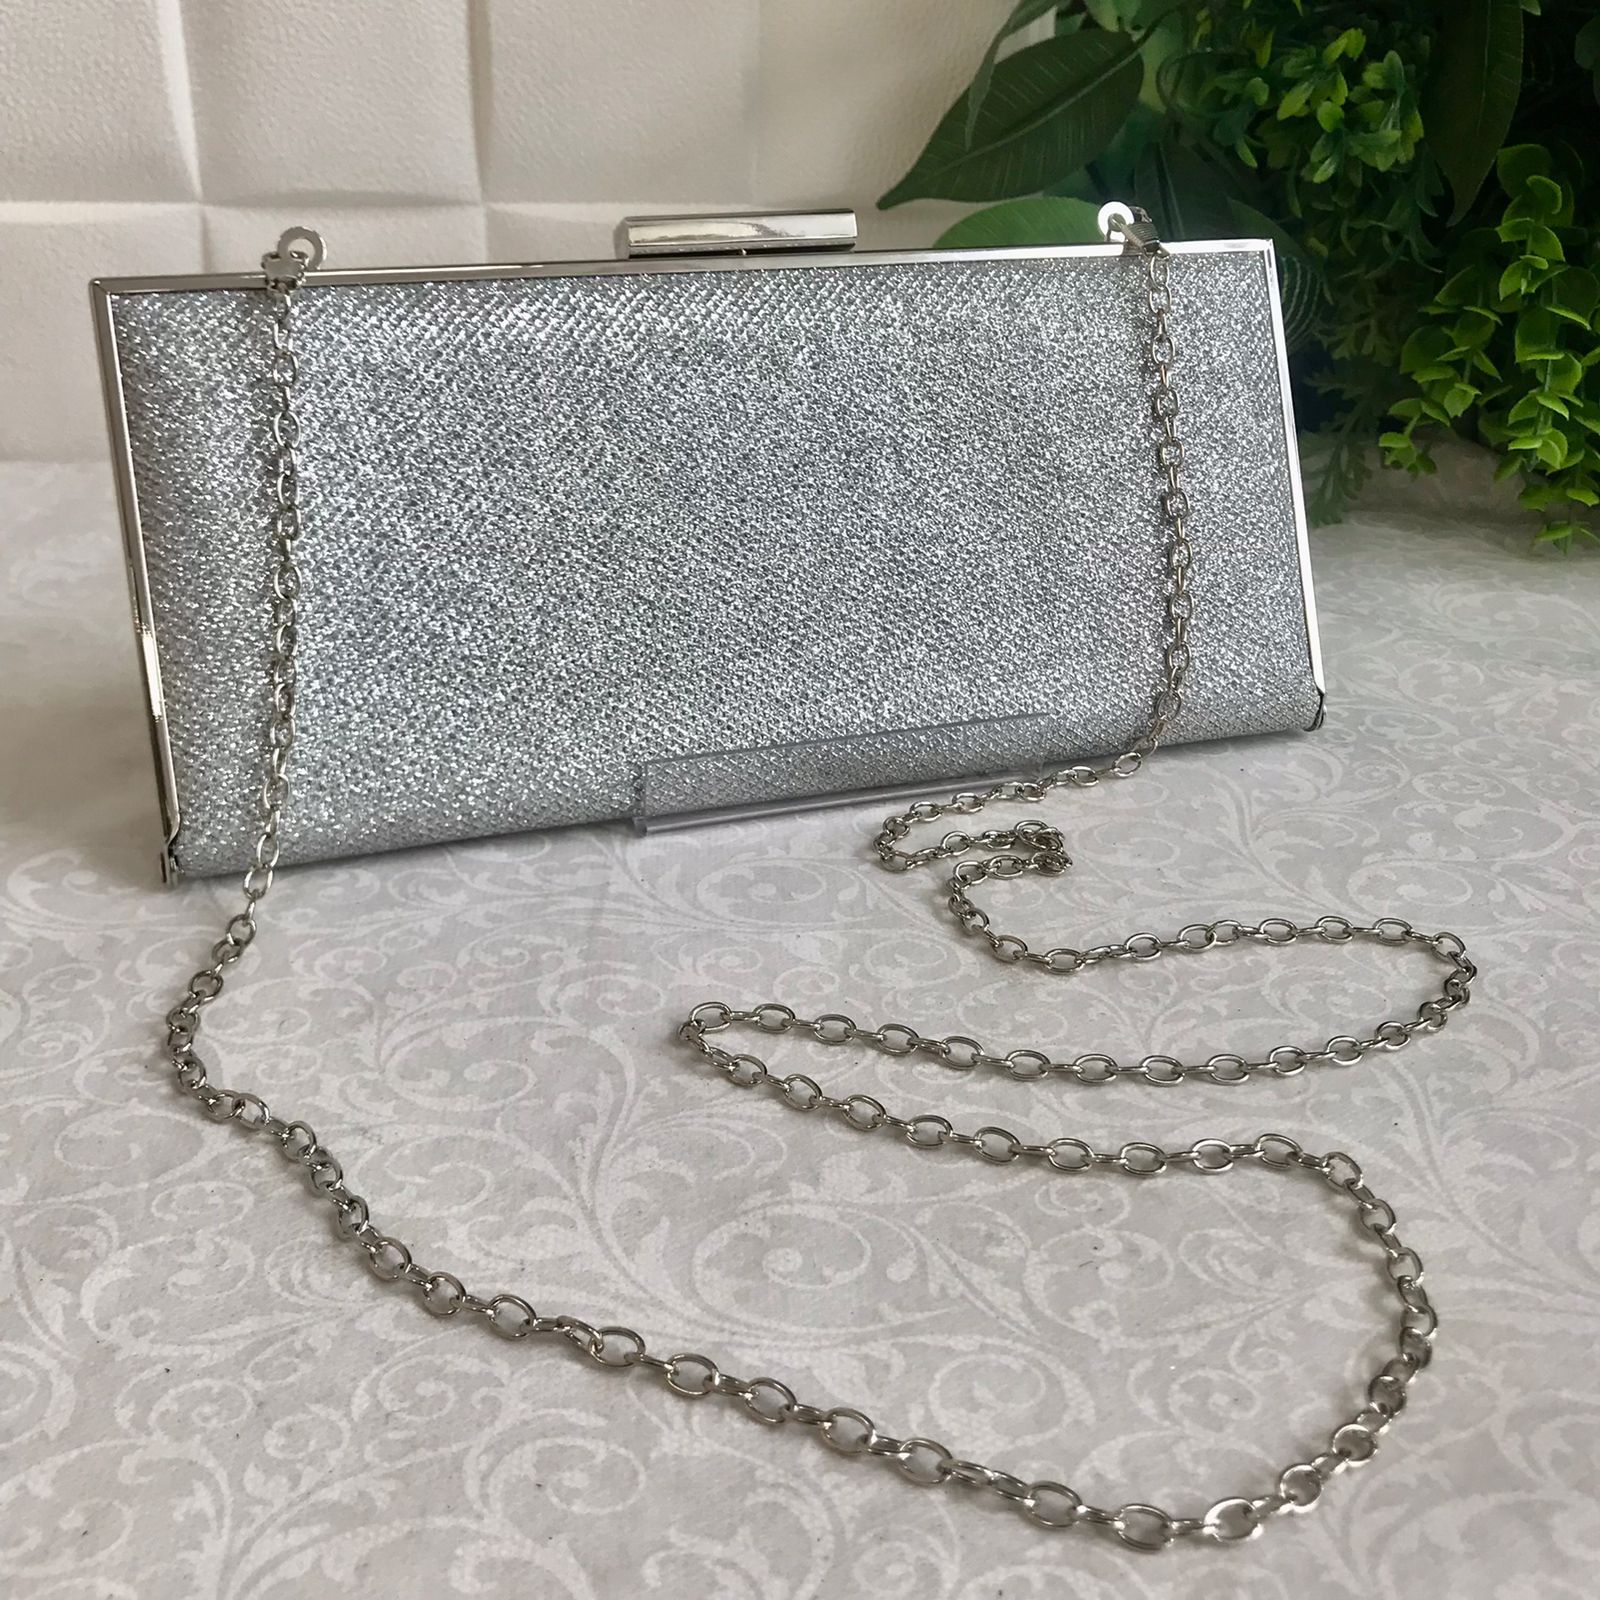 Bolsa de festa na cor prata, produto de alta qualidade - Raquel Bela -  Bolsas que valorizam seu look